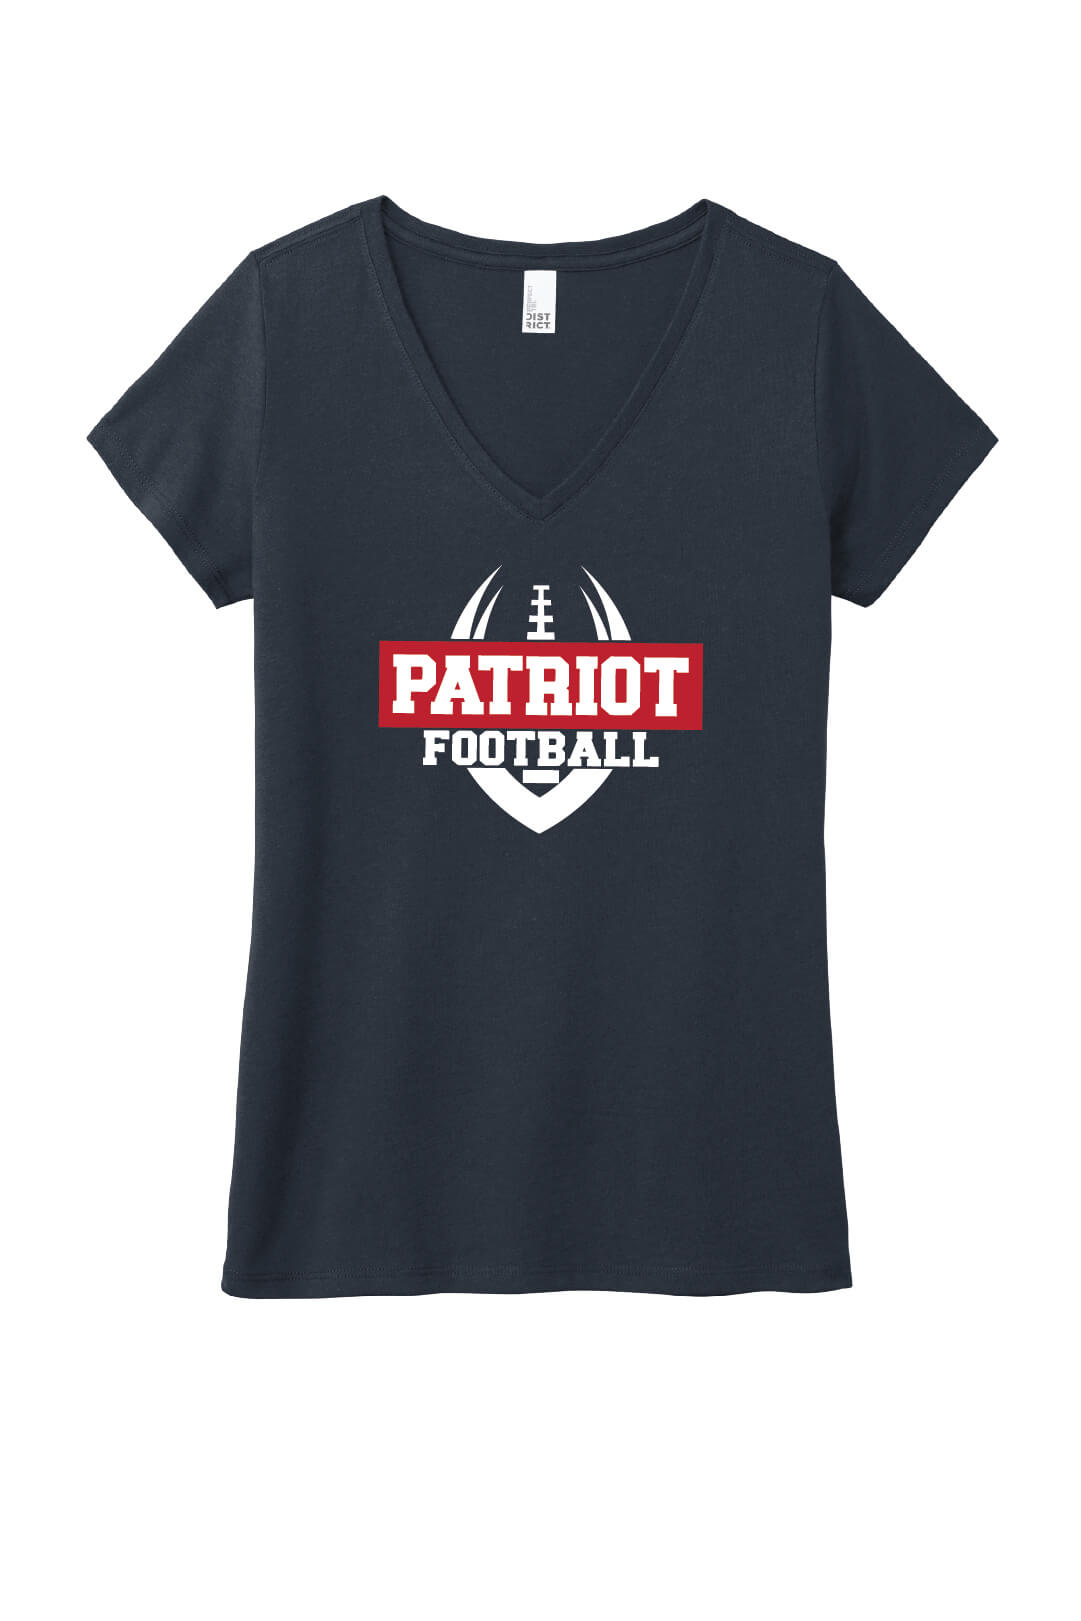 Patriot Football Ladies V-Neck Short Sleeve T-Shirt navy